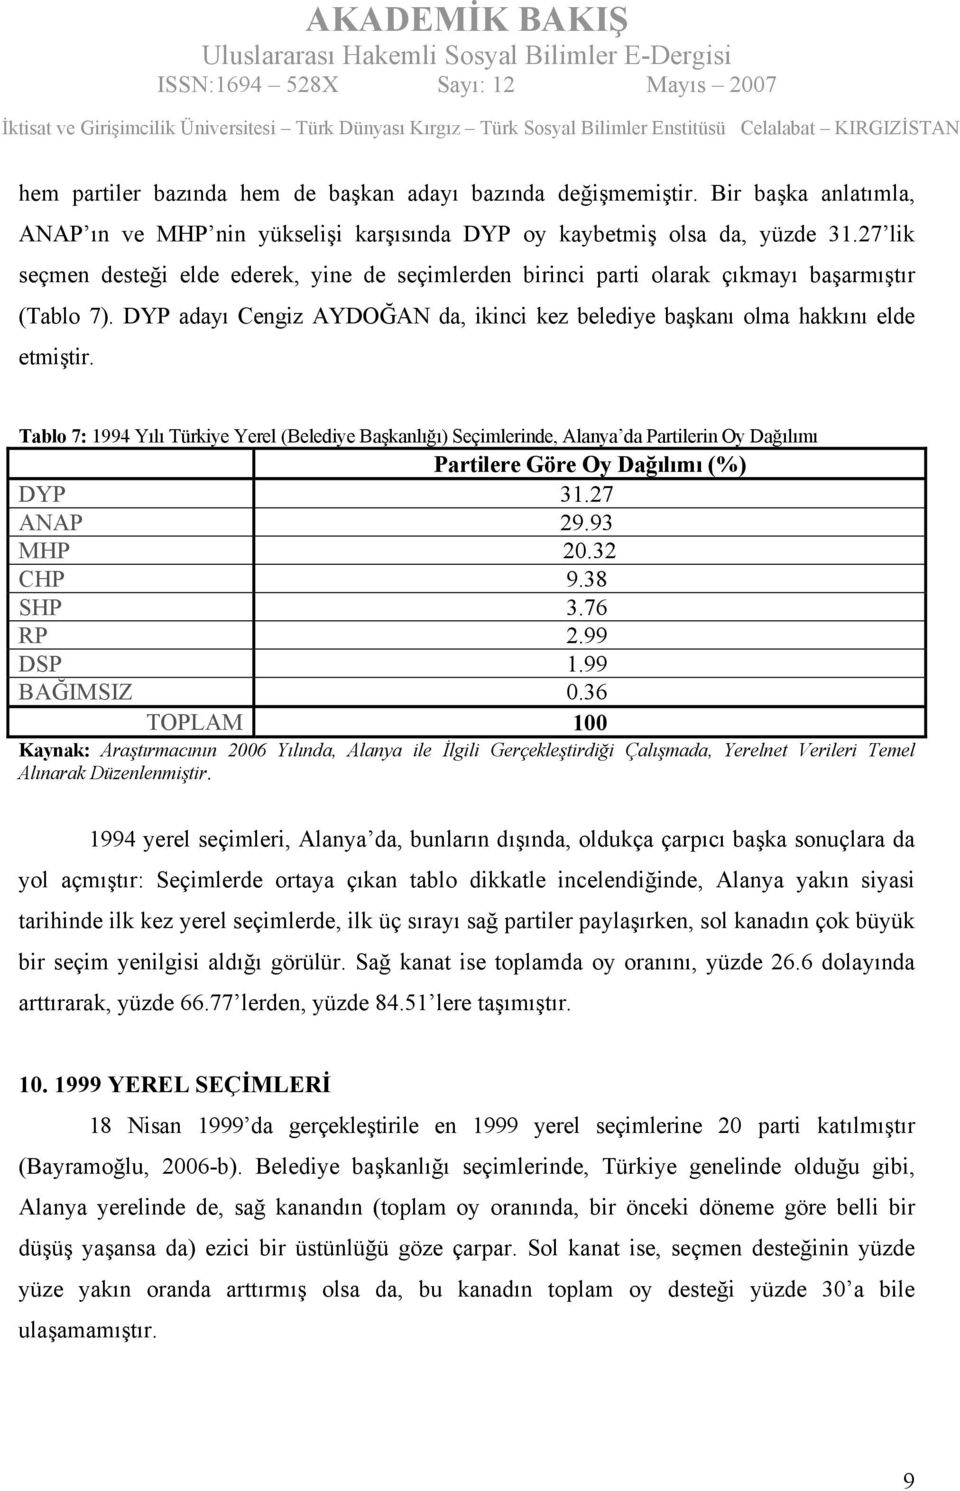 Tablo 7: 1994 Yılı Türkiye Yerel (Belediye Başkanlığı) Seçimlerinde, Alanya da Partilerin Oy Dağılımı DYP 31.27 ANAP 29.93 MHP 20.32 CHP 9.38 SHP 3.76 RP 2.99 DSP 1.99 BAĞIMSIZ 0.